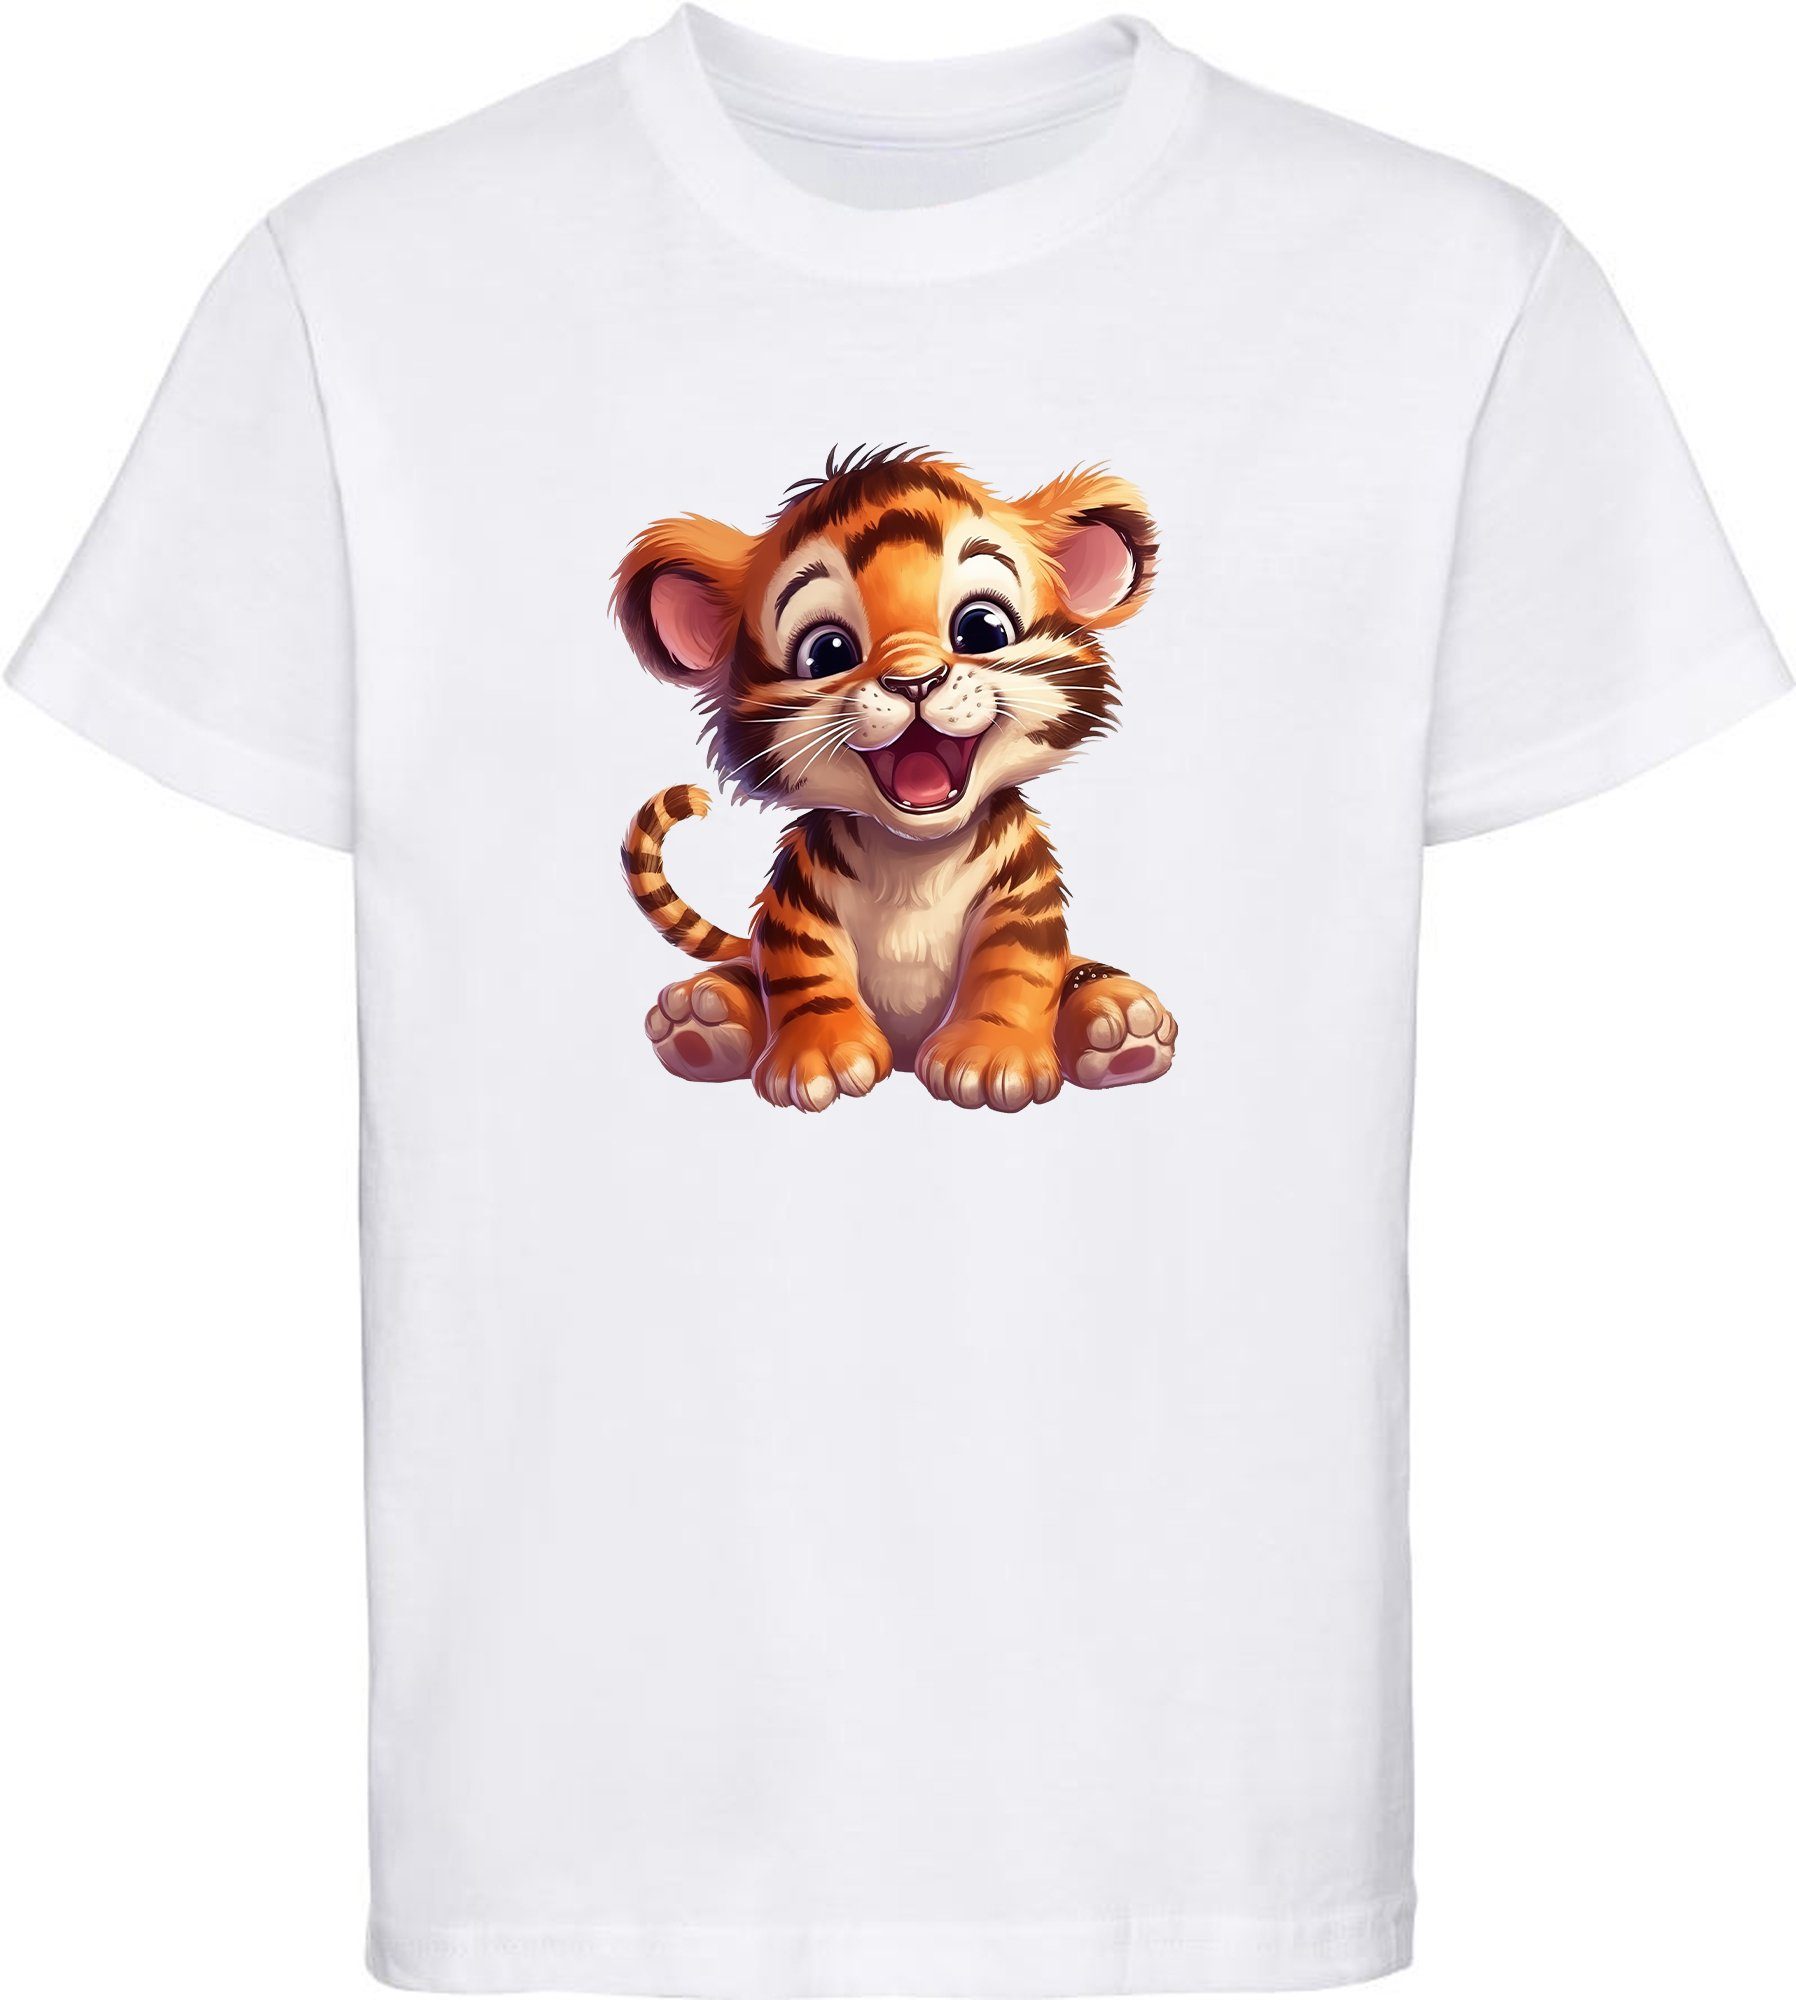 MyDesign24 T-Shirt Kinder Wildtier Print Shirt bedruckt - Baby Tiger Baumwollshirt mit Aufdruck, i266 weiss